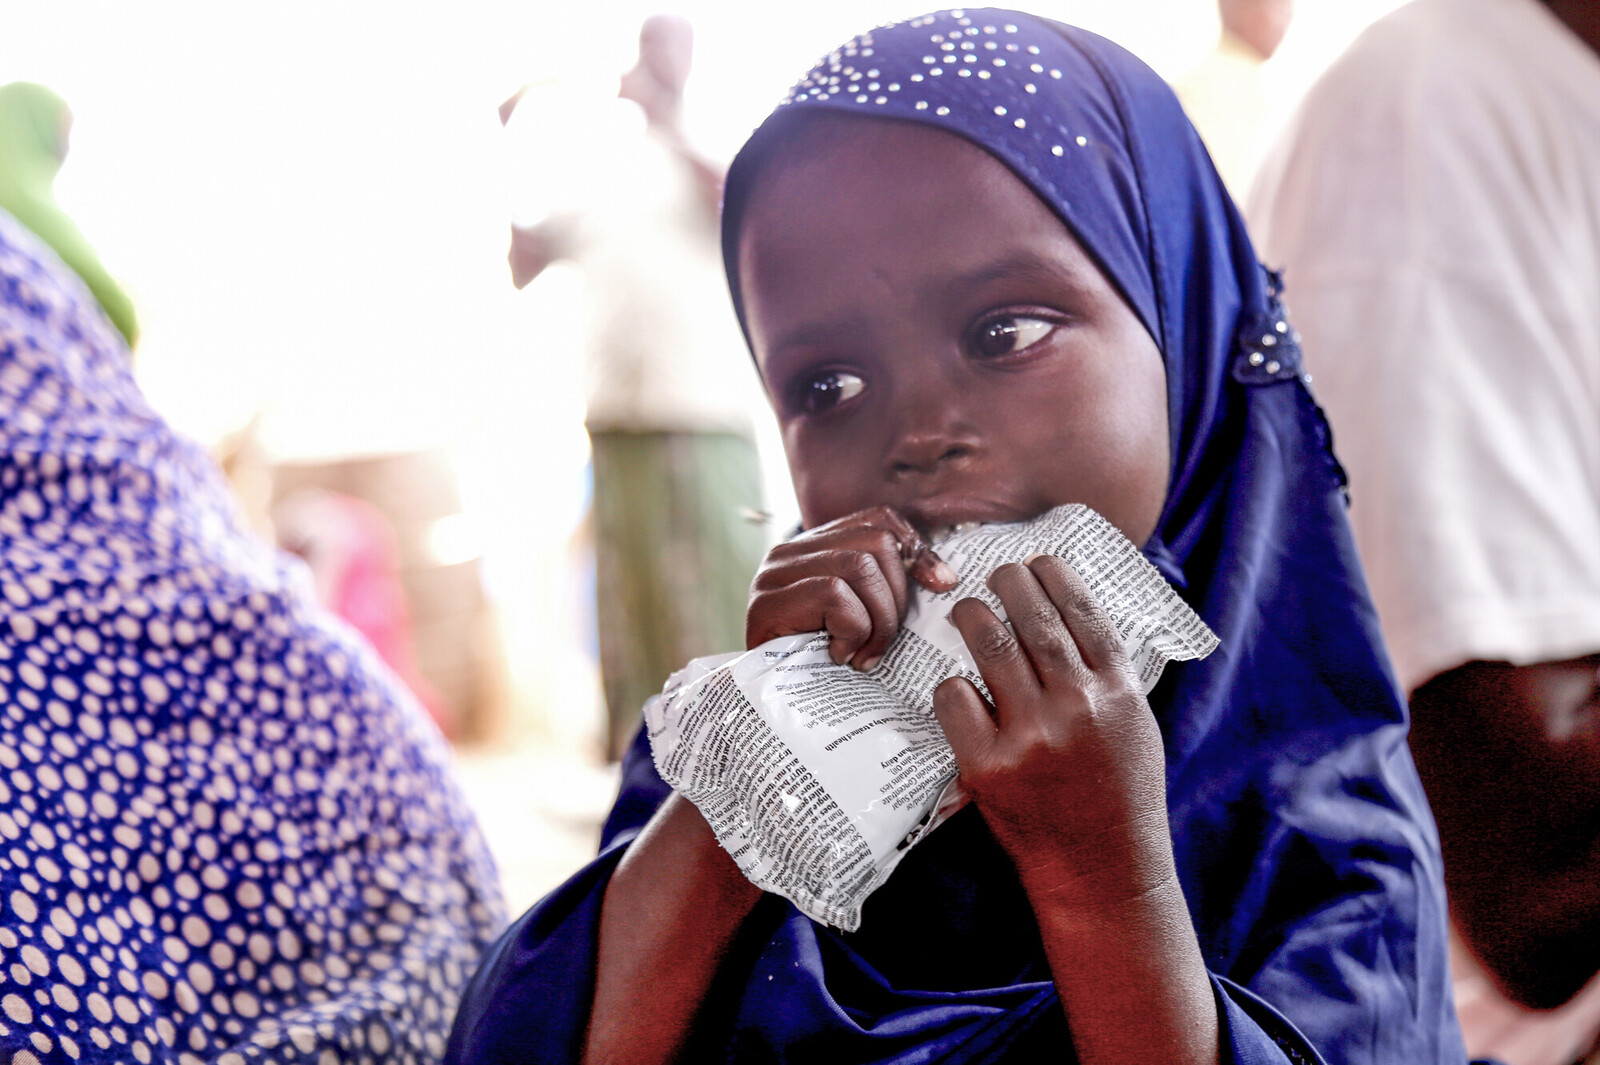 Ein Mädchen in Somalia, Afrika, mit der Notfallnahrung Plumpy Nut